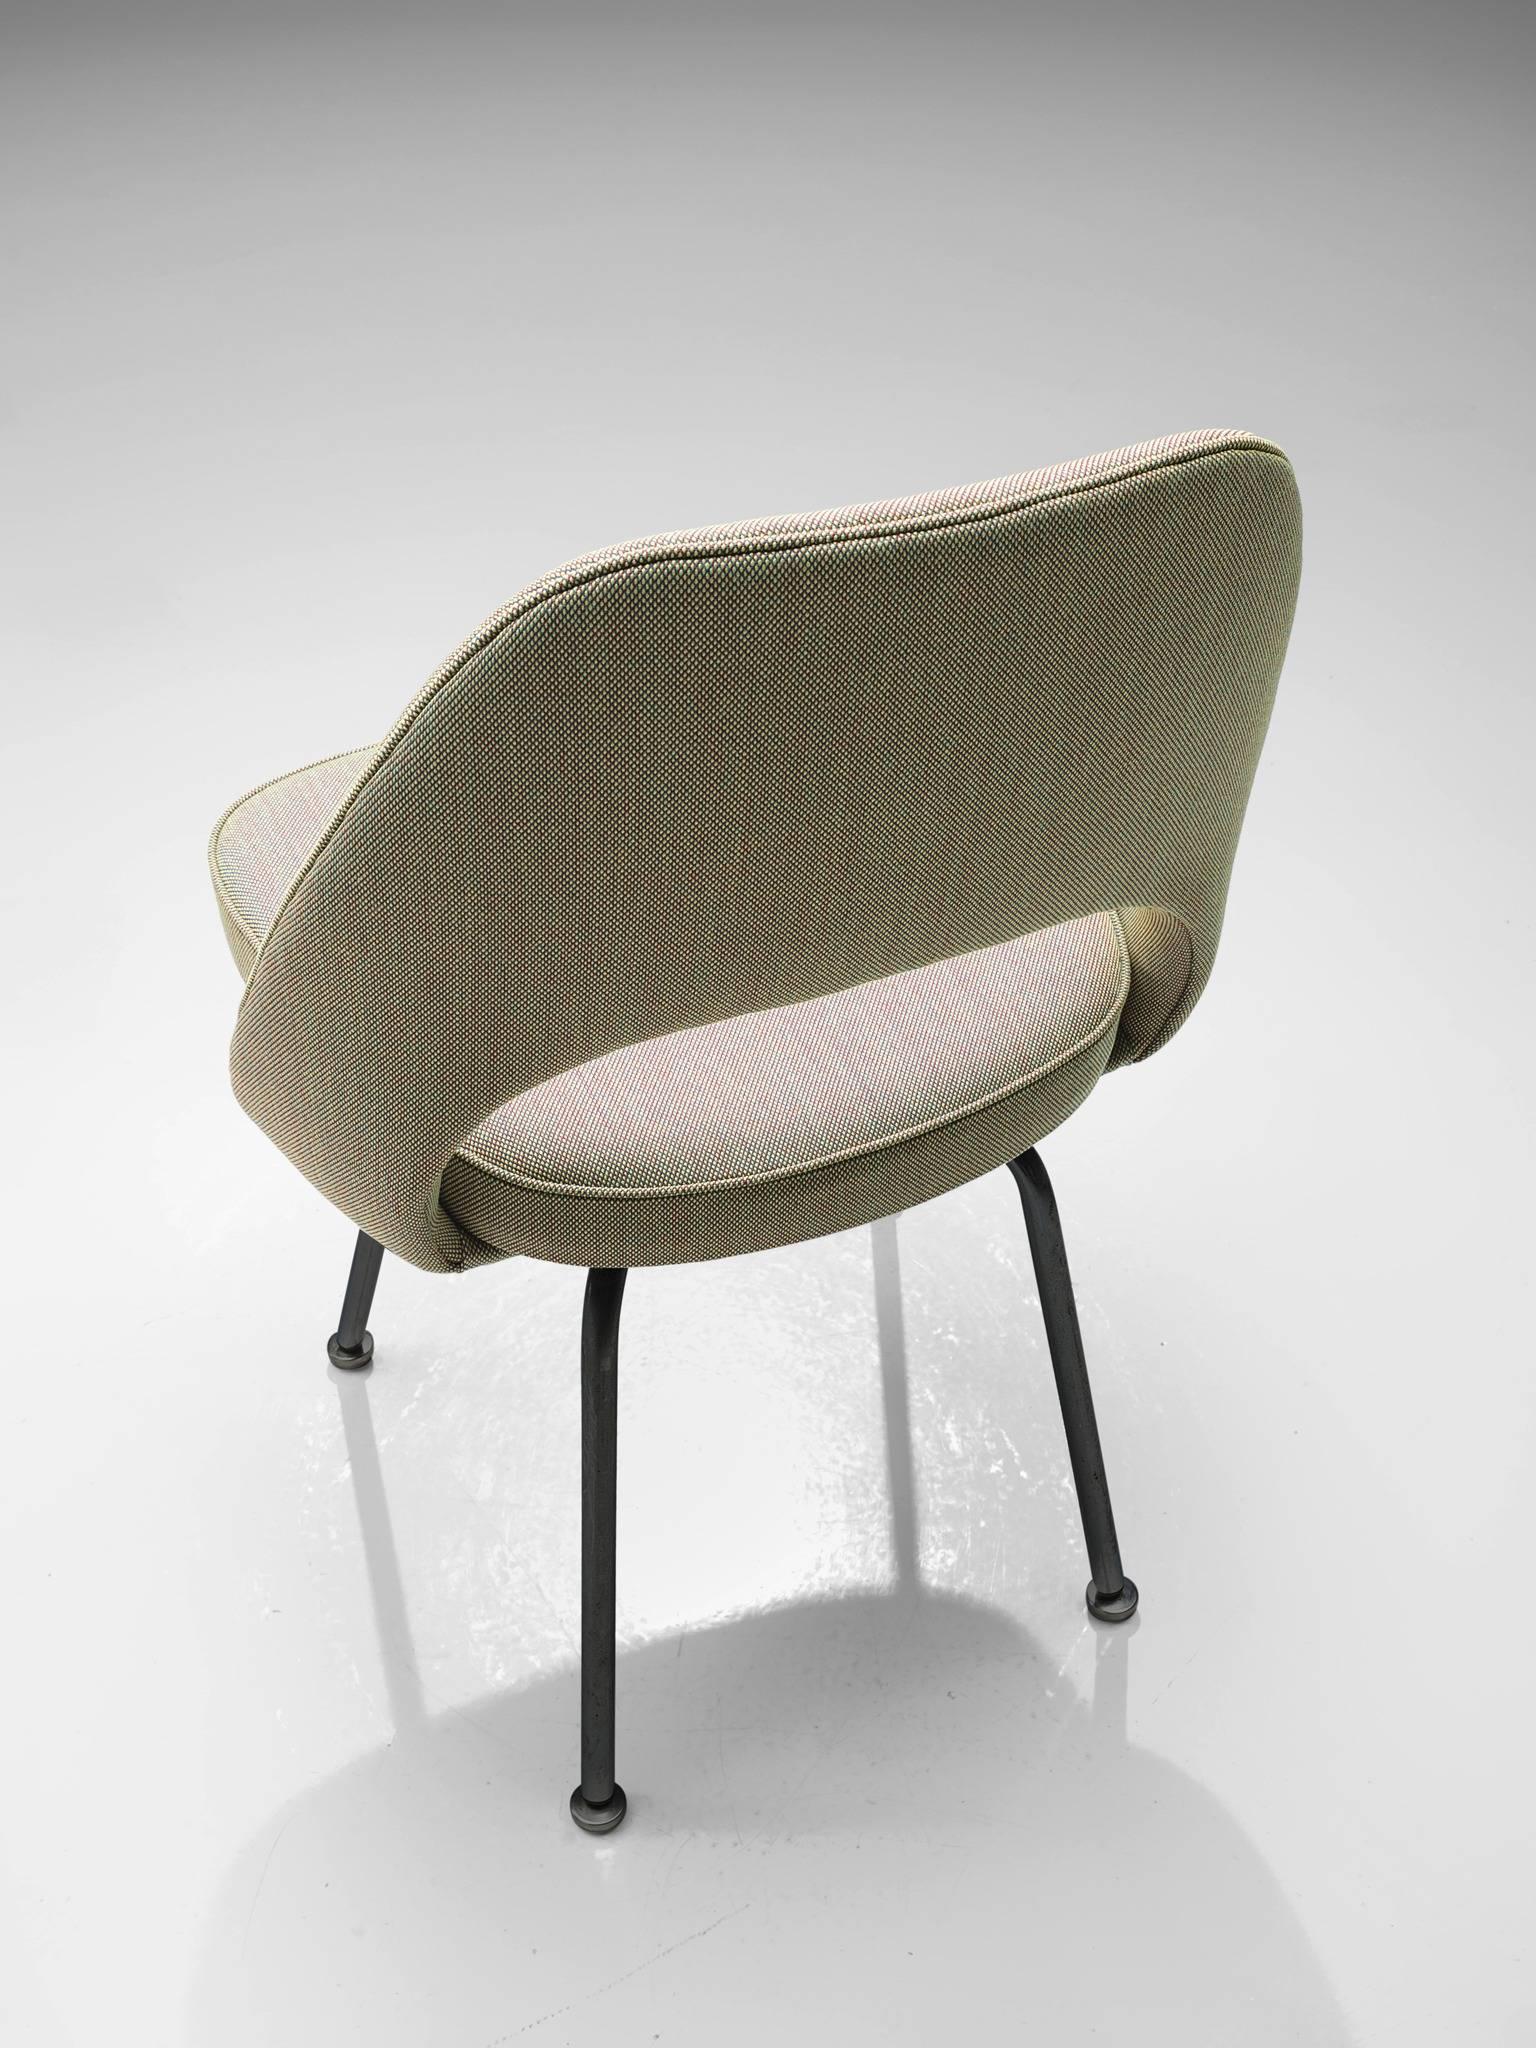 Steel Eero Saarinen for Knoll Chairs